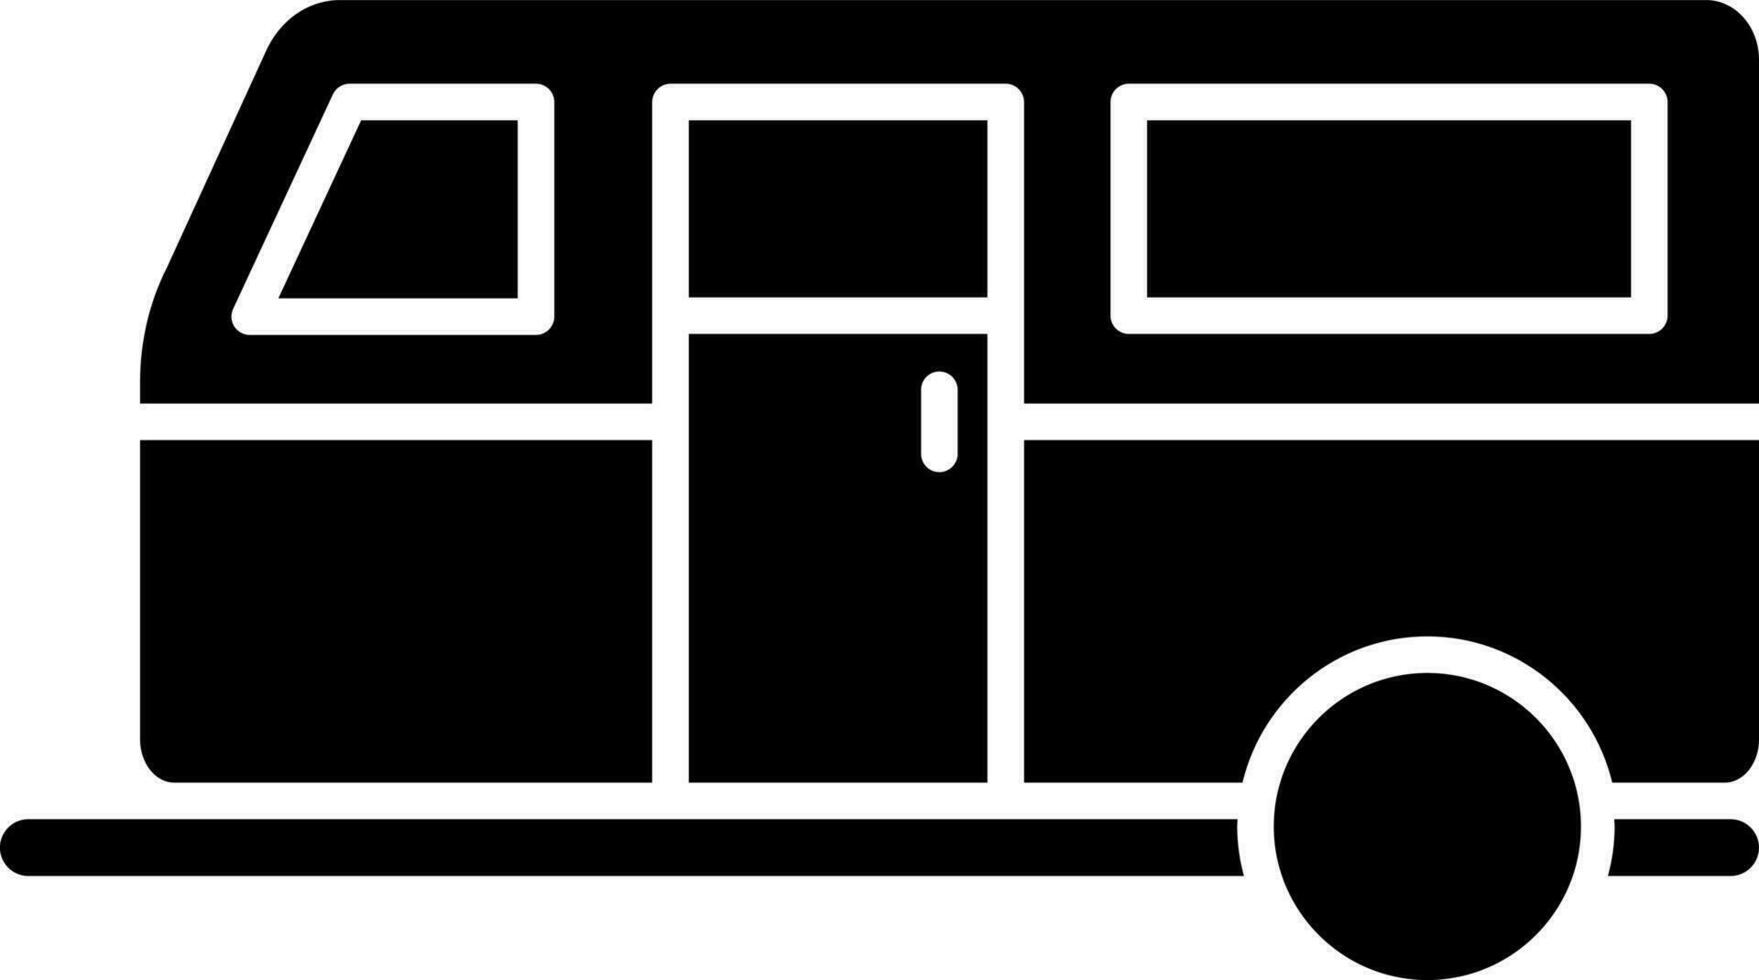 Preto e branco ilustração do ônibus ícone. vetor